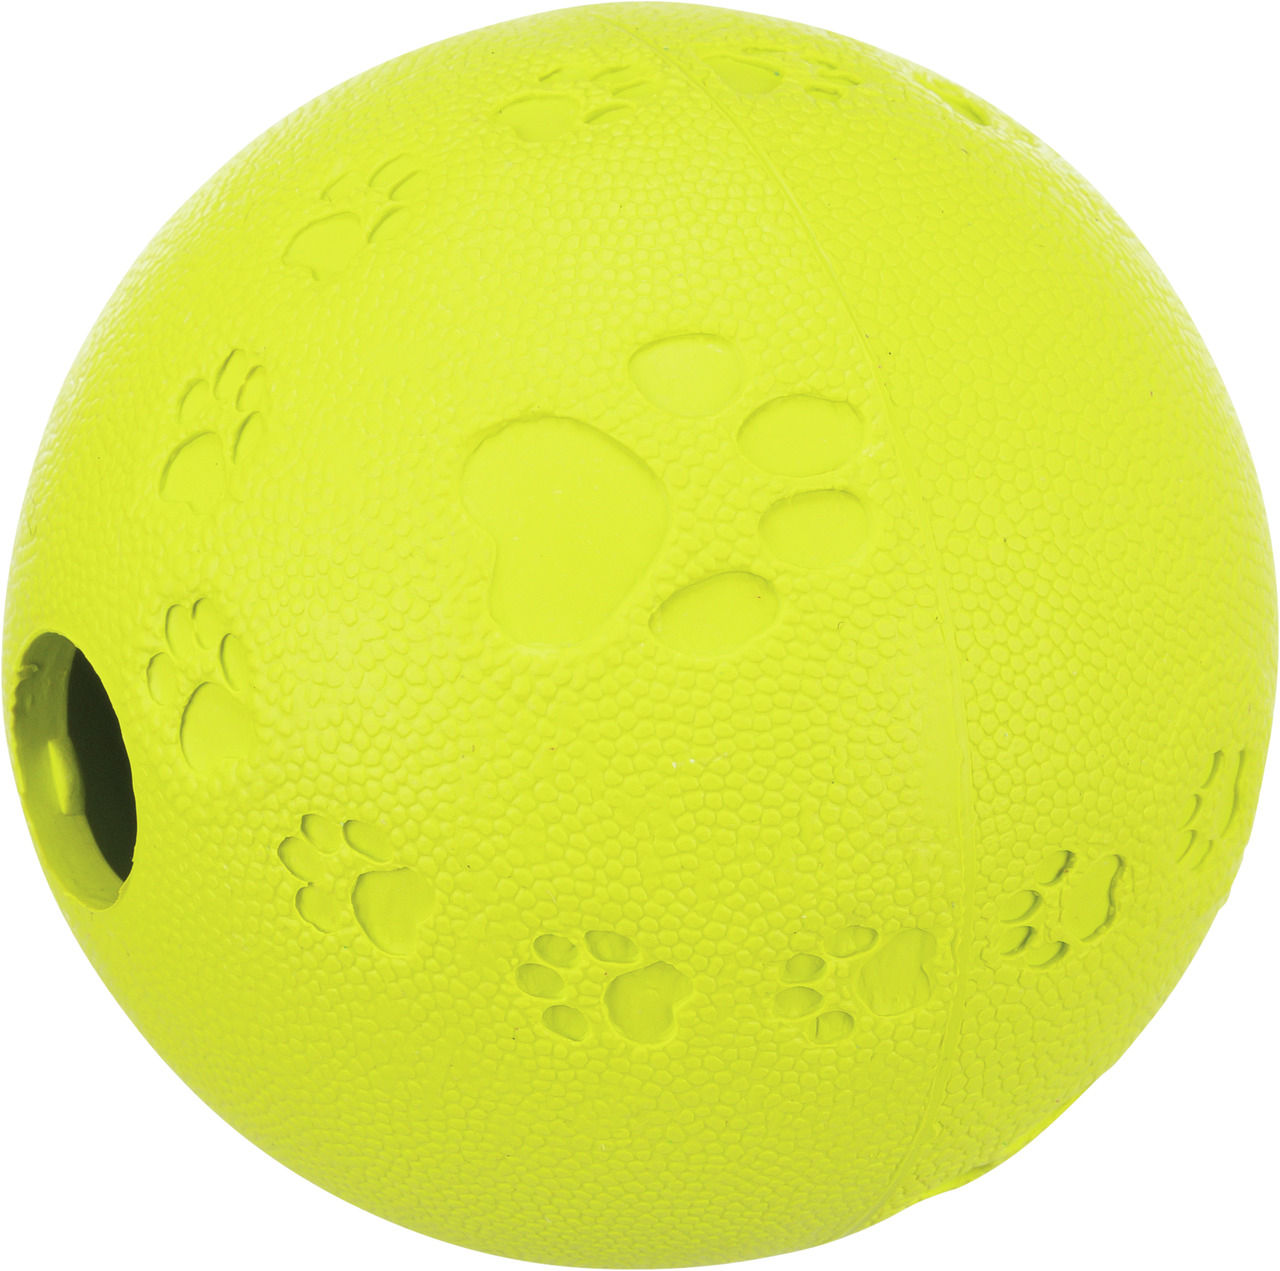 Trixie Snackball Hunde Spielzeug 9 cm